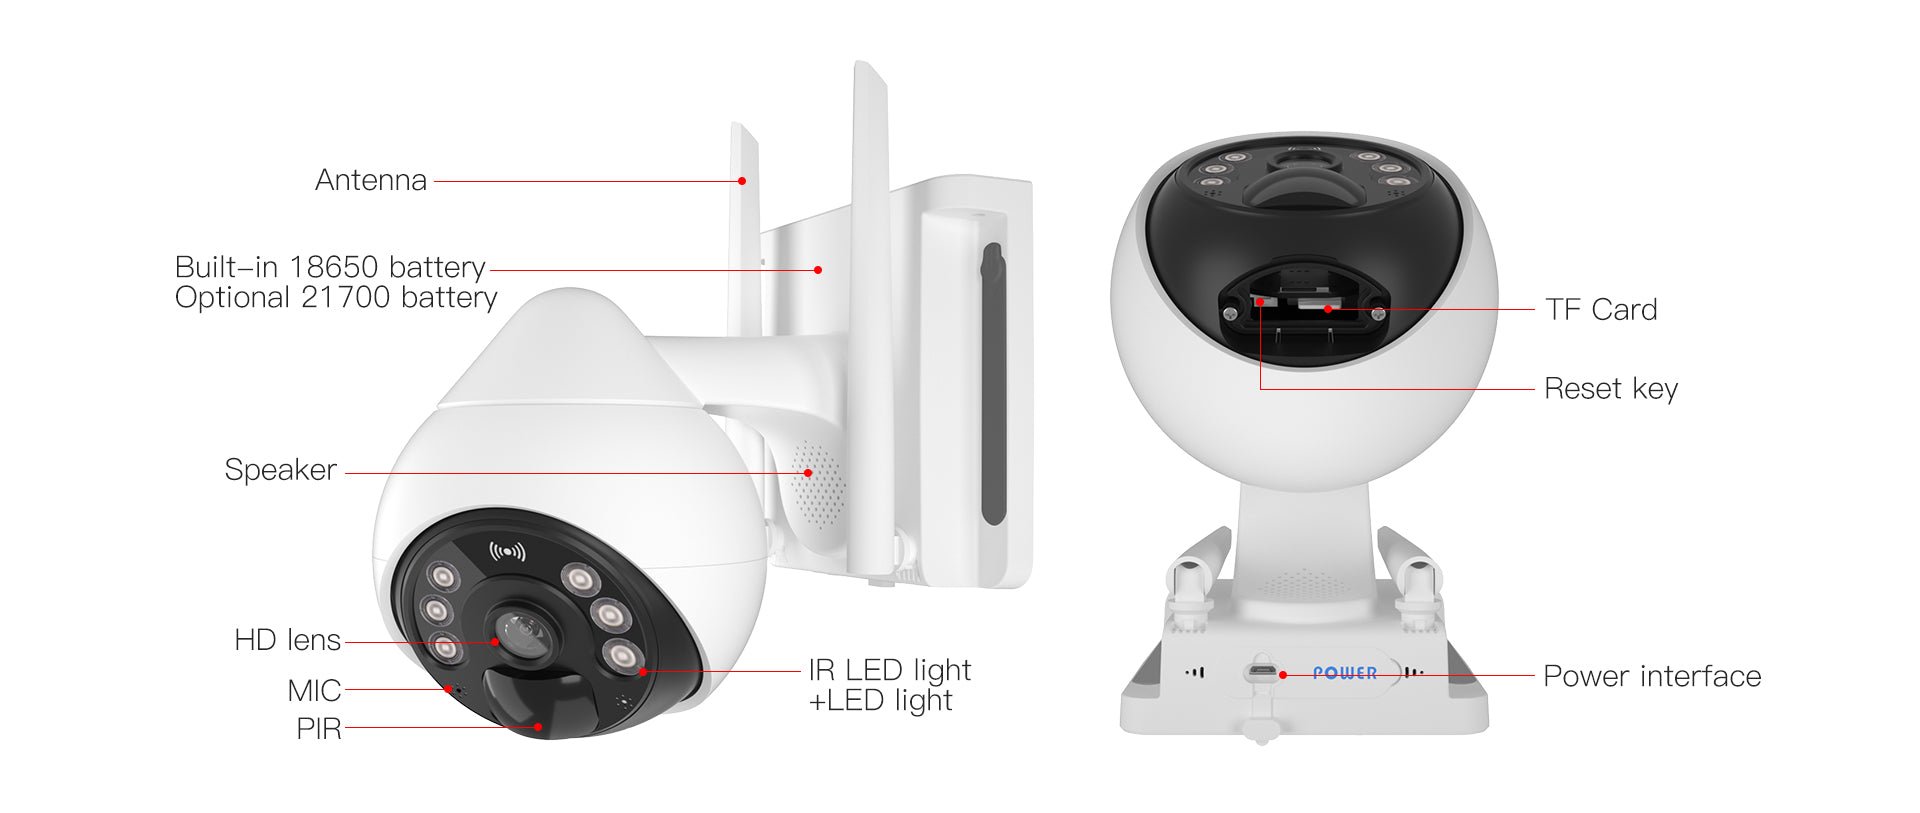 Security Camera Model : VS - CB69 - TZ - FlashTech InnovationSurveillance Cameras